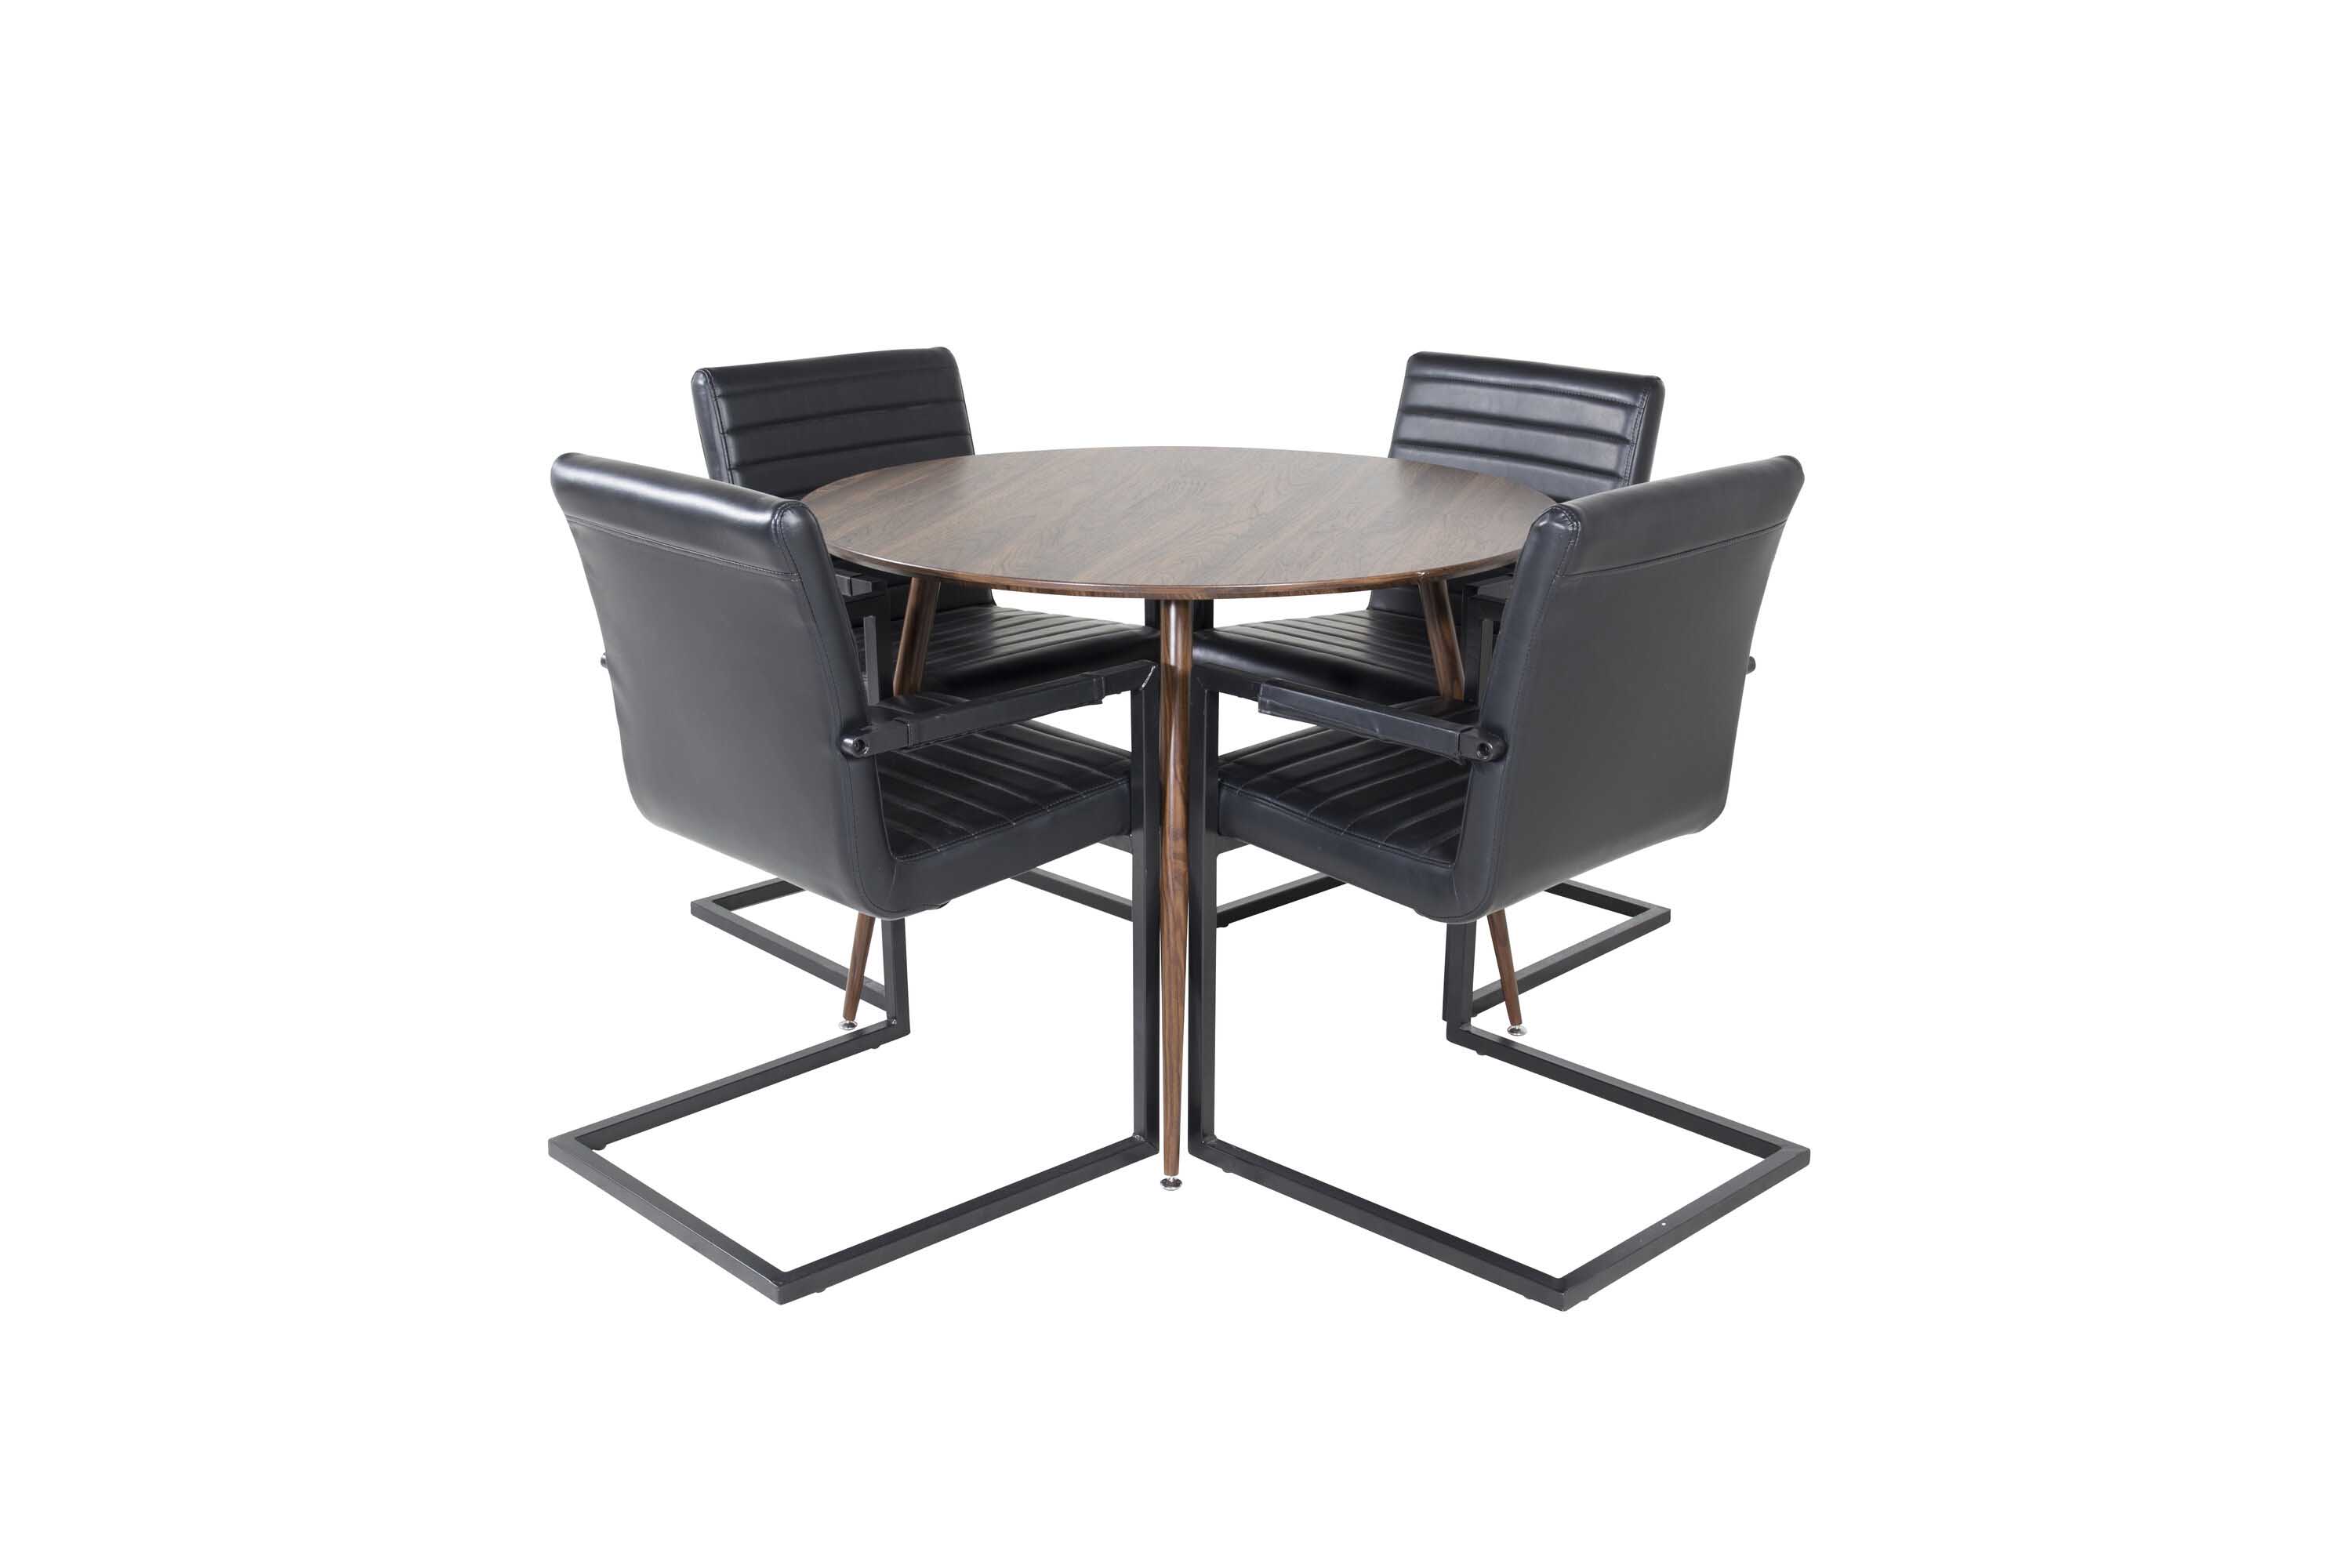 Venture Design Plaza & Art spisebordssæt Brun/sort 4 st stole & borde 100 cm